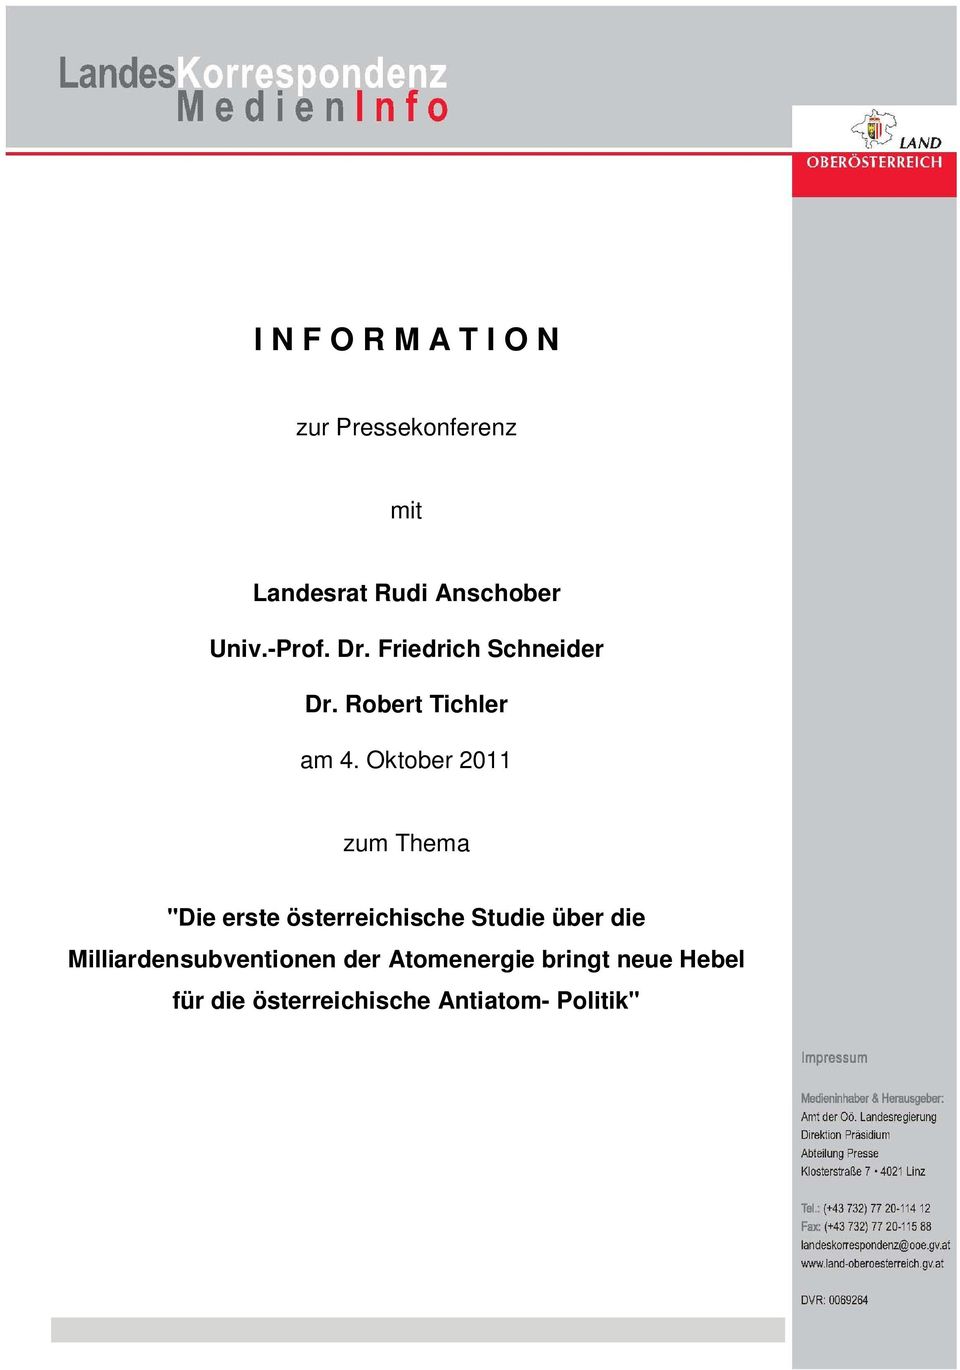 Oktober 2011 zum Thema "Die erste österreichische Studie über die